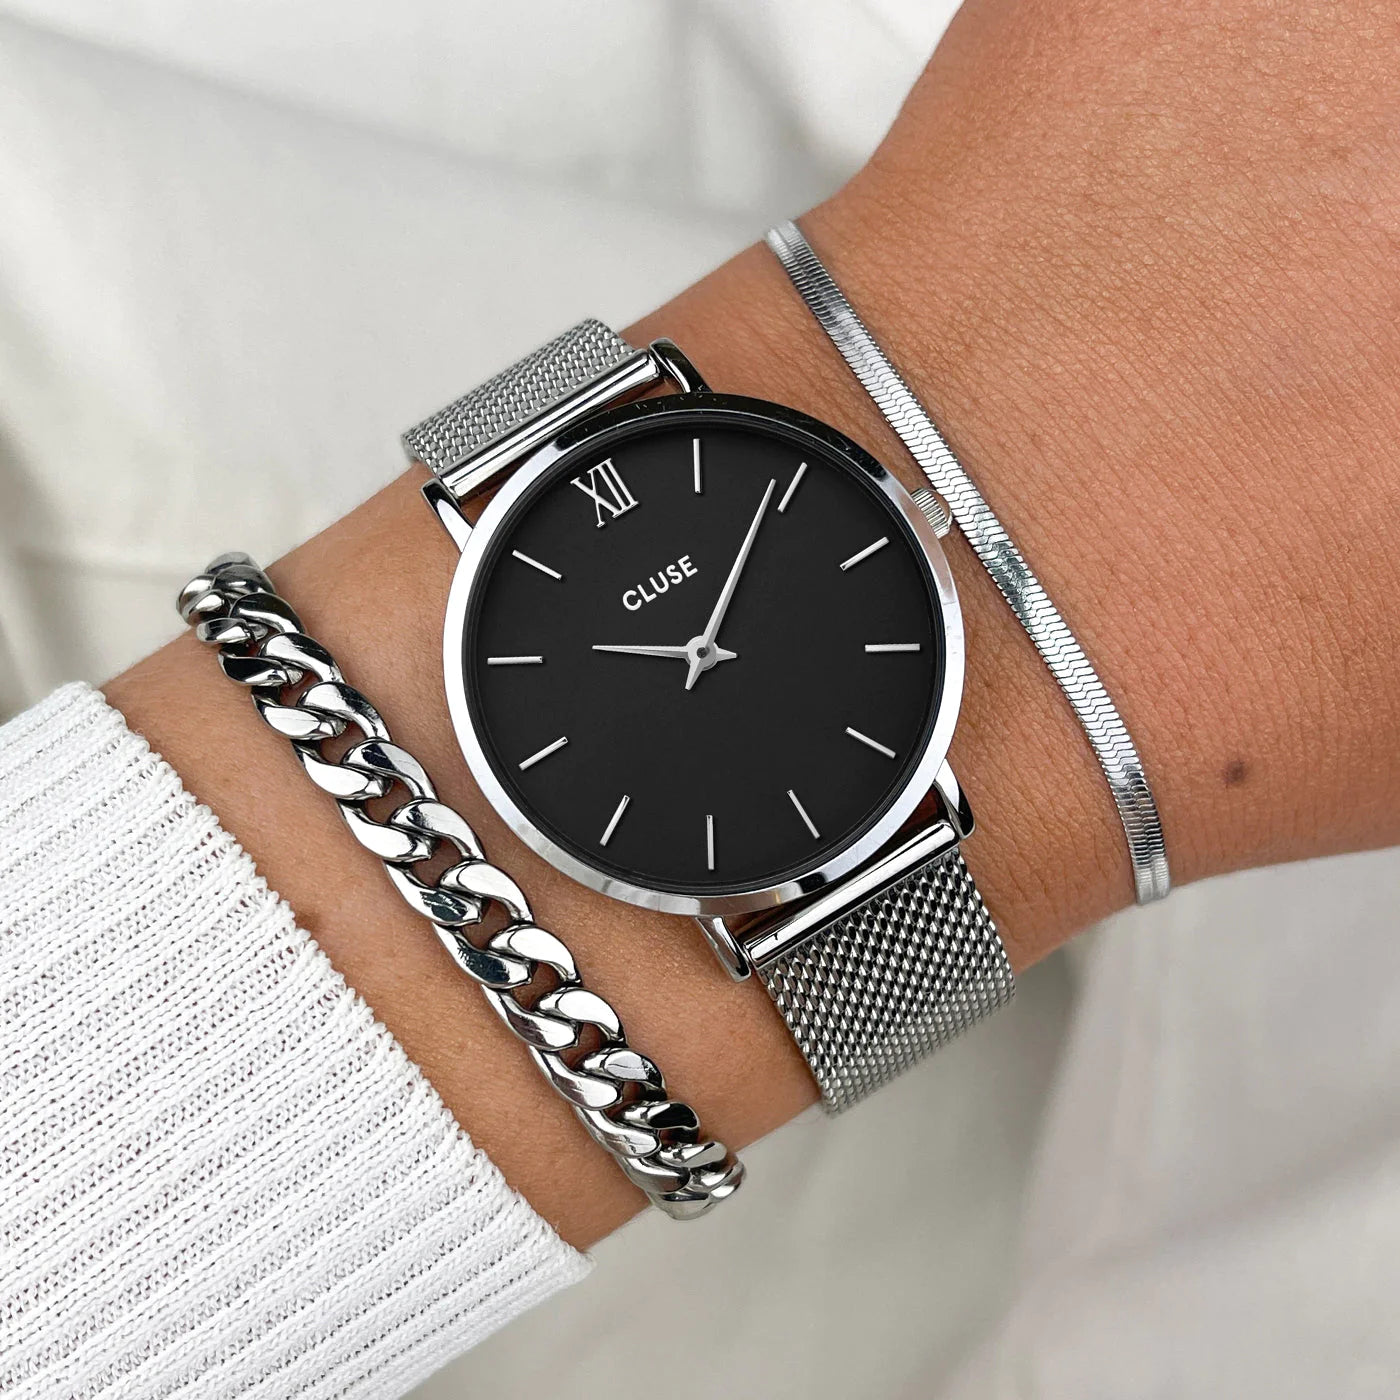 Frau trägt die Cluse Stahl-Uhr "Minuit Mesh" mit silberfarbenem Gehäuse und schwarzem Zifferblatt und kombiniert diese mit zwei silbernen Armbändern